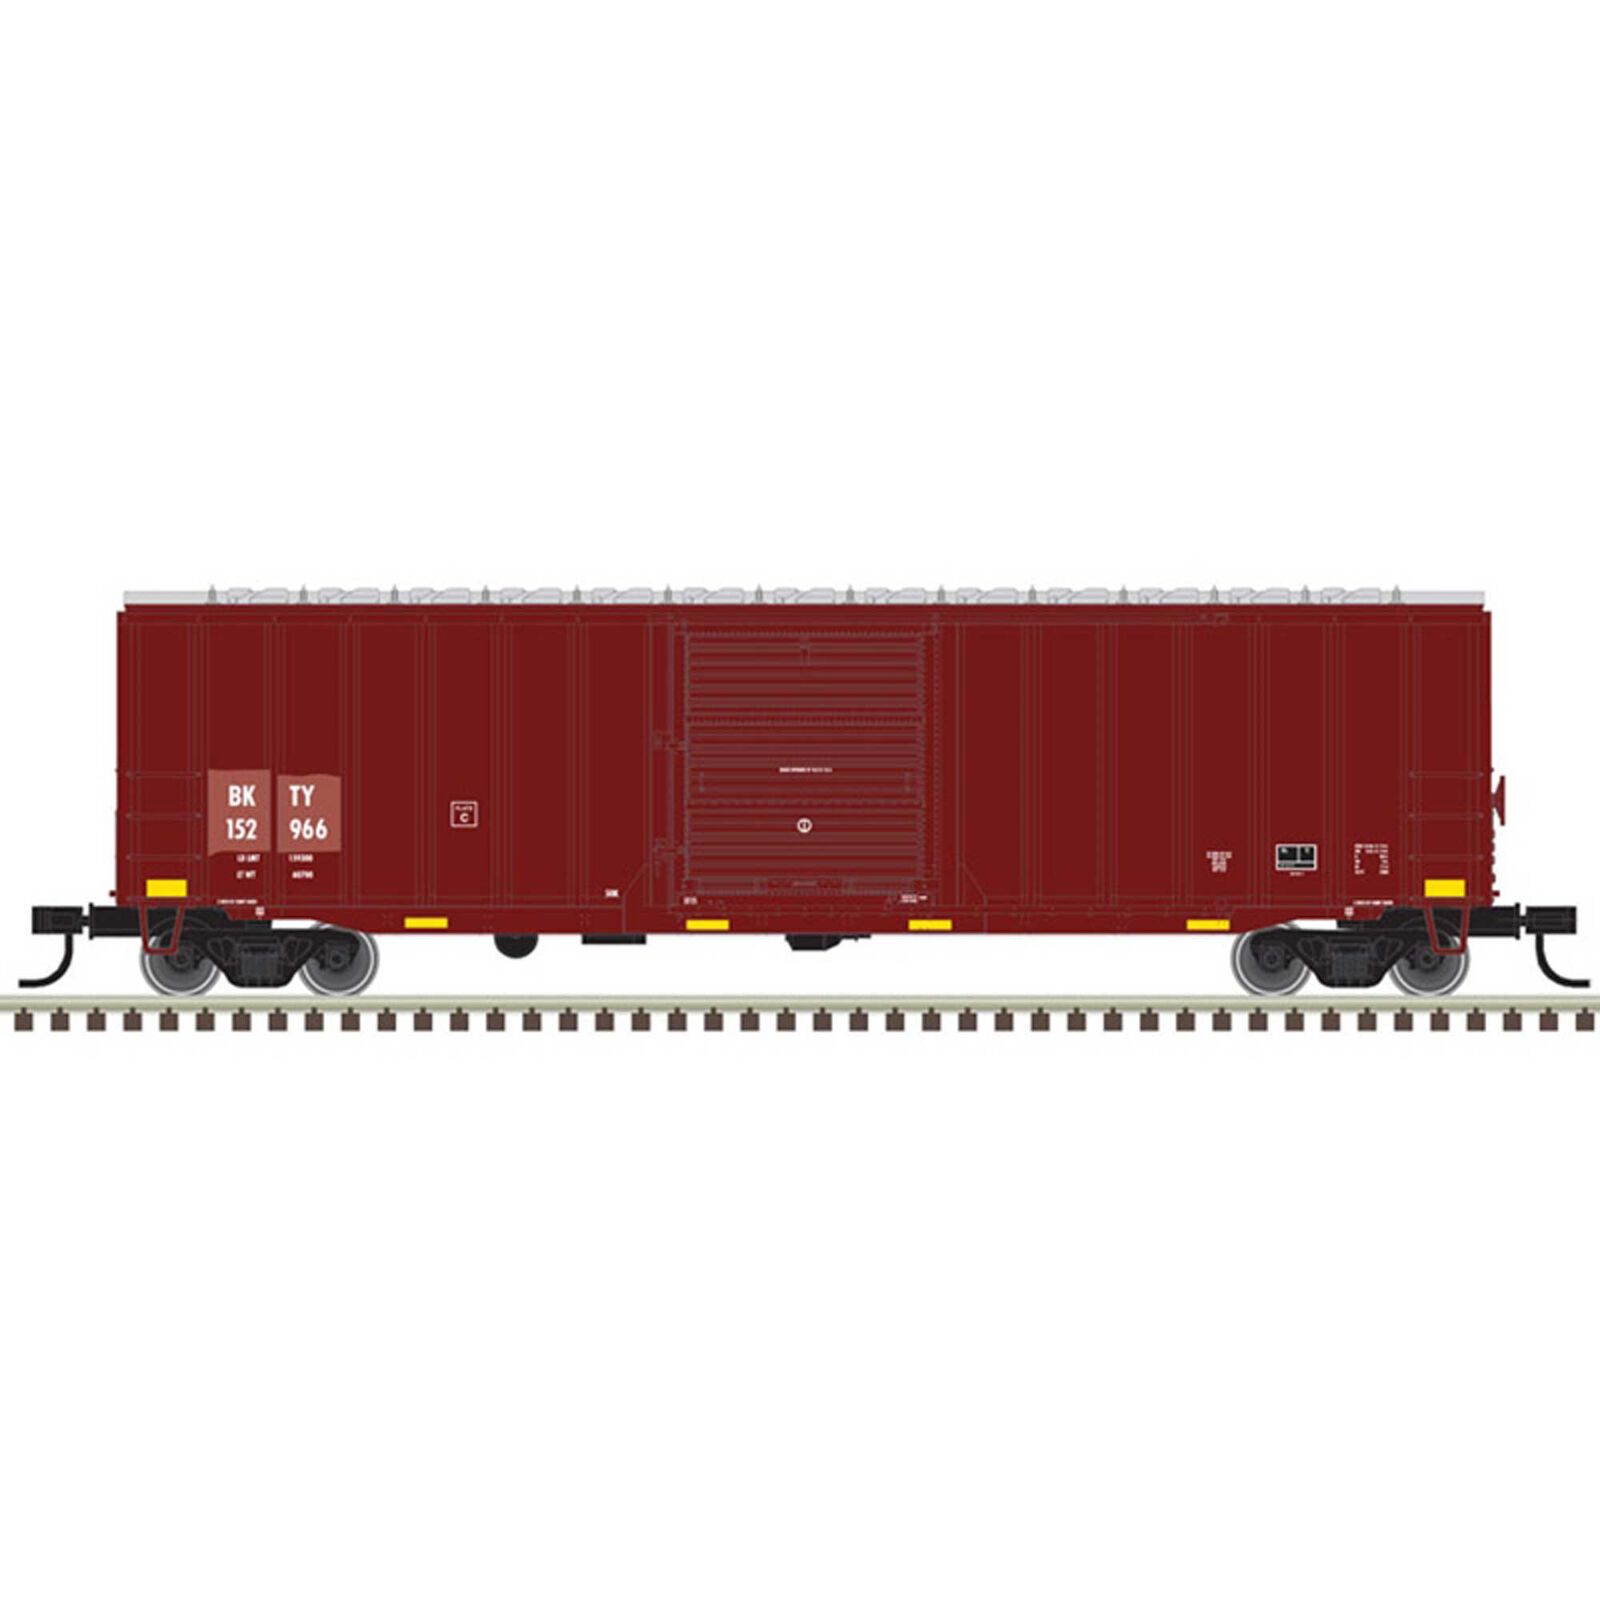 N 50'6" Box Car Union Pacific (BKTY) 152966